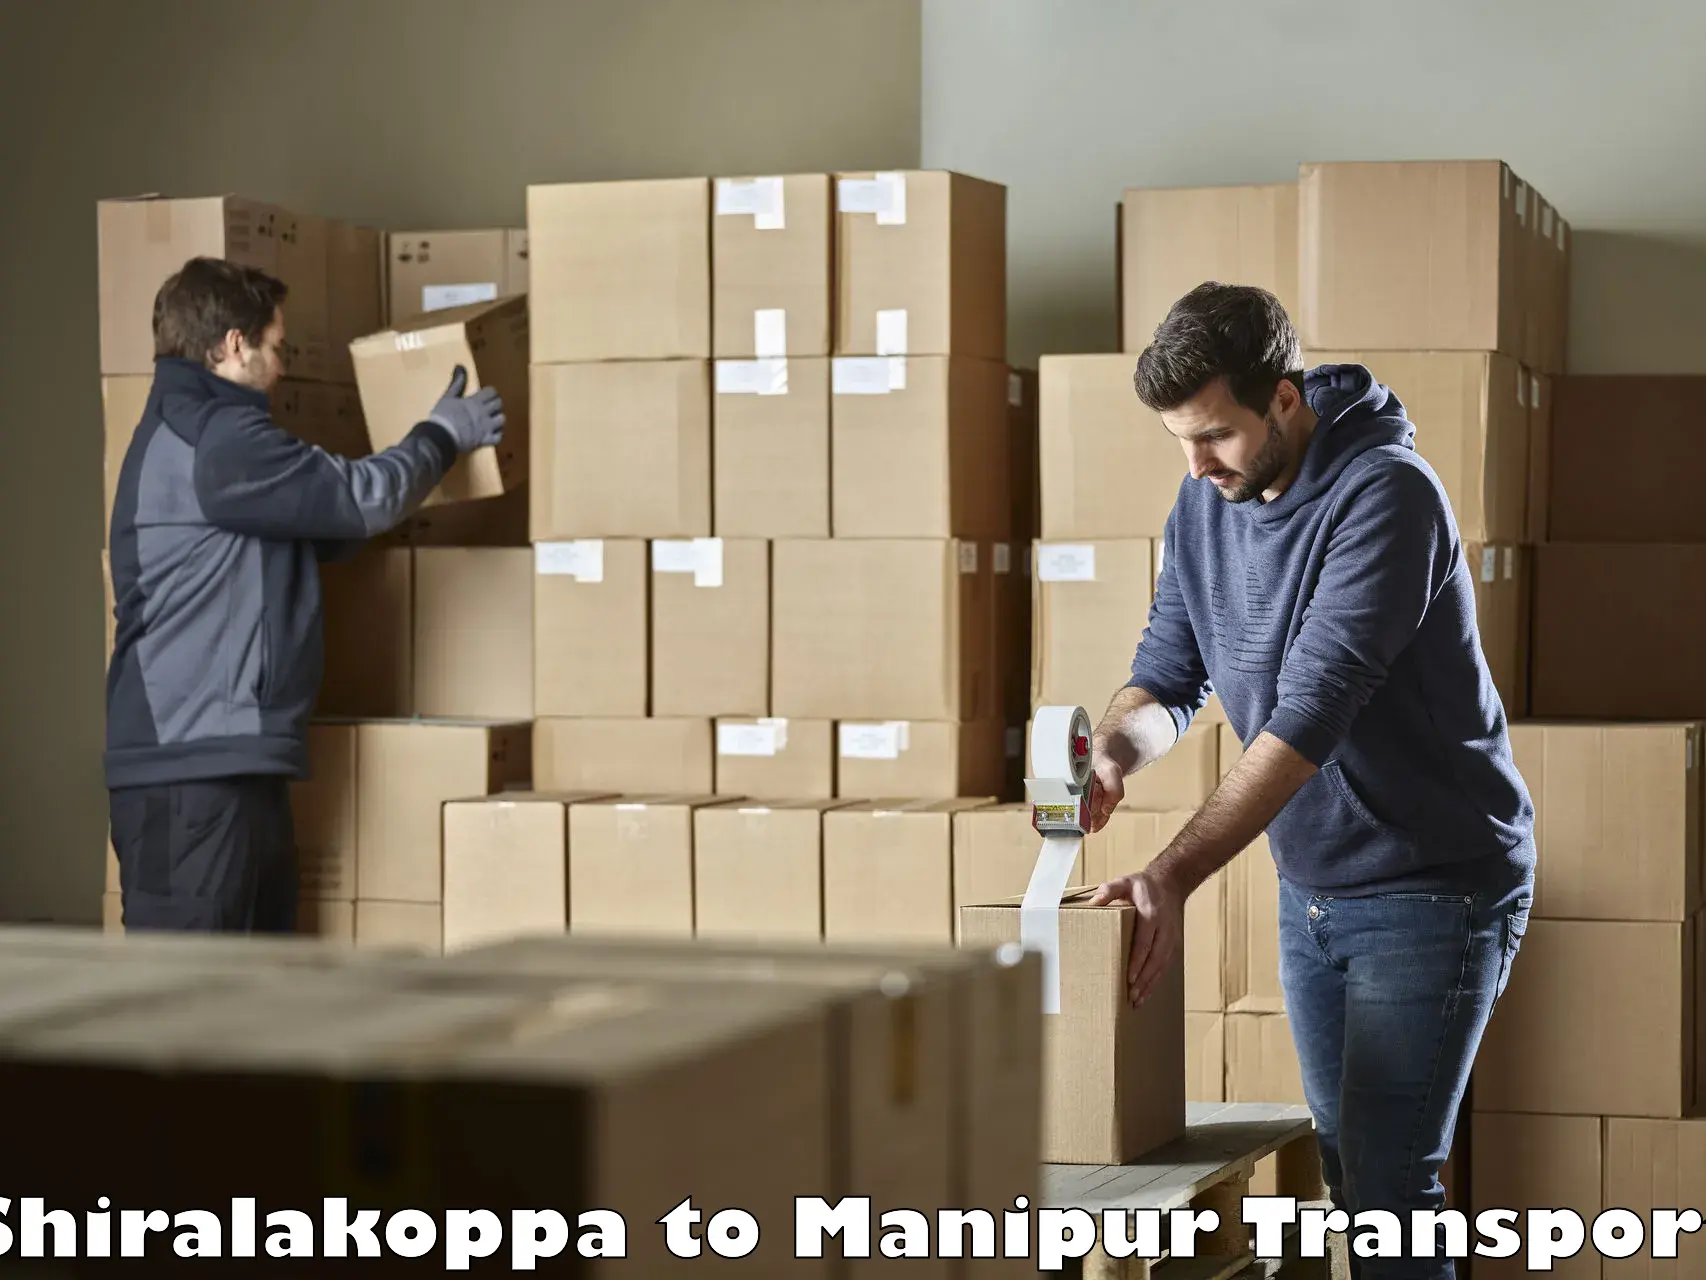 Furniture transport service Shiralakoppa to Imphal